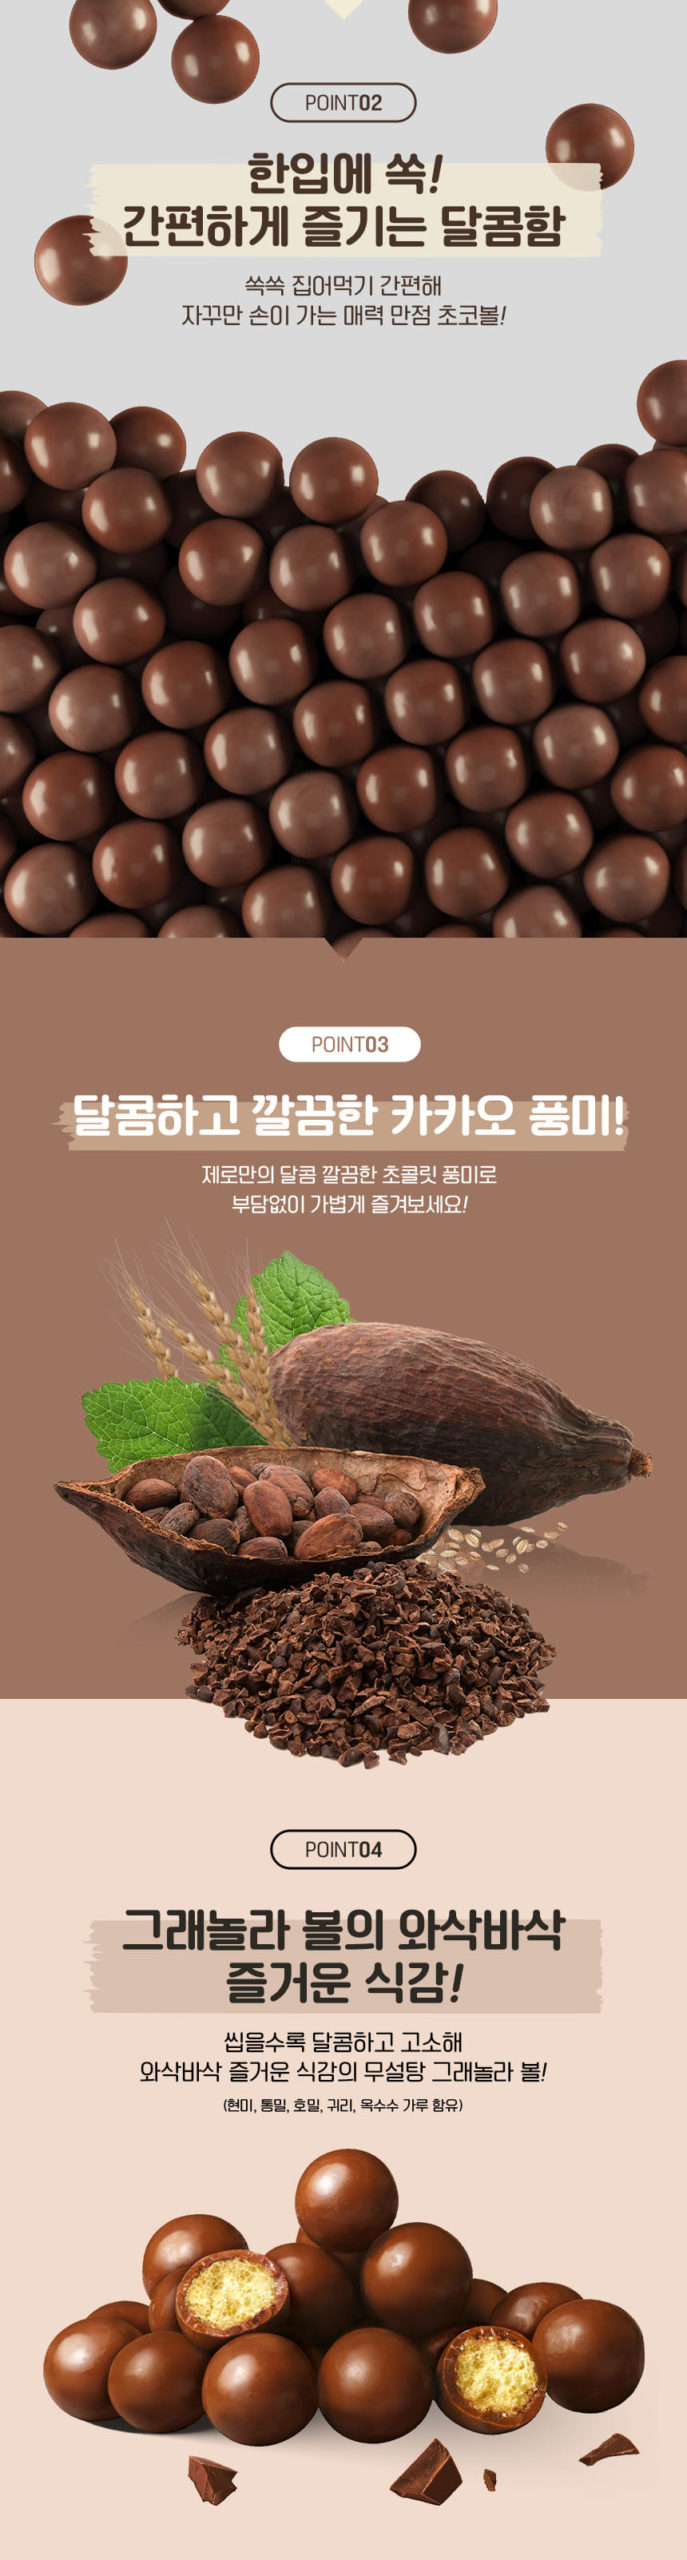 韓國食品-[Lotte] 無糖朱古力波 34g